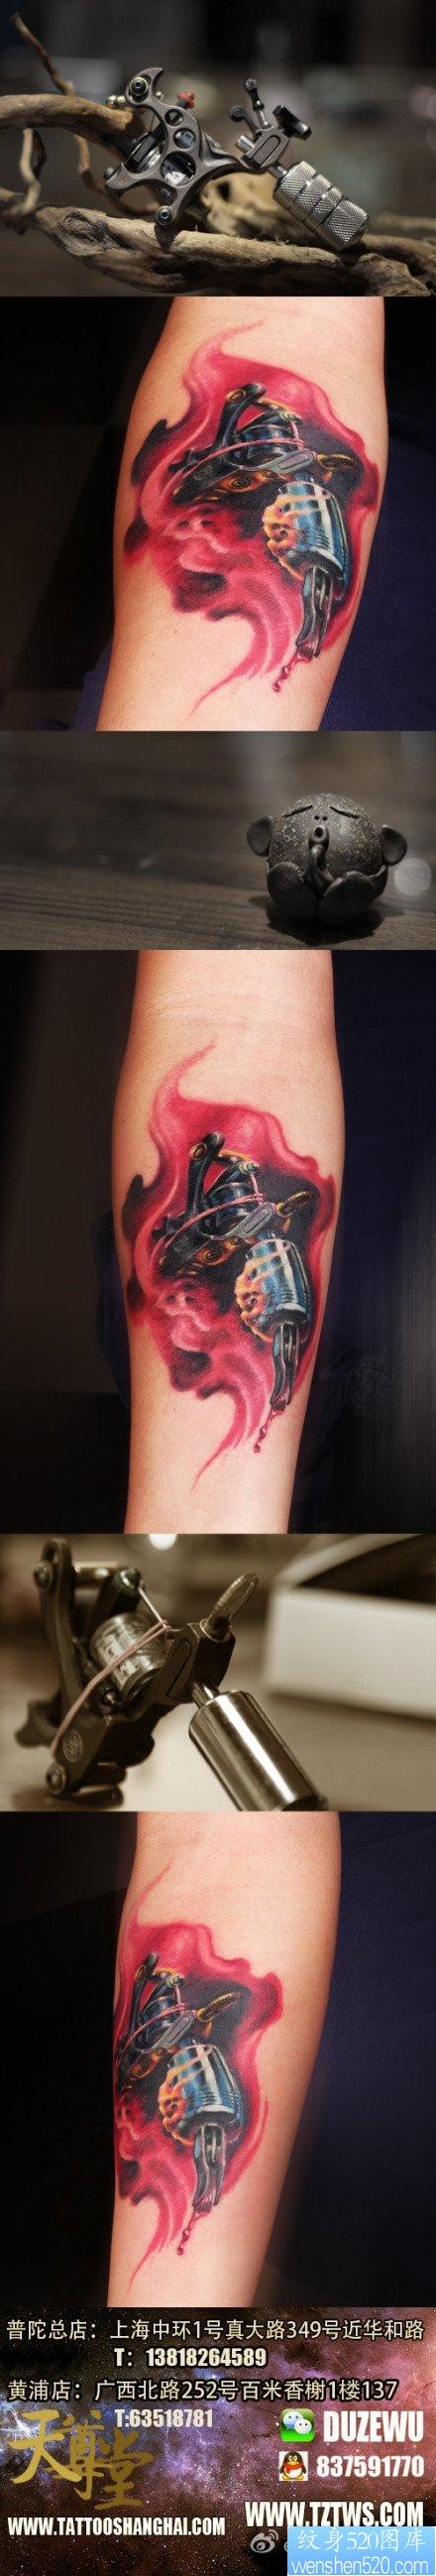 手臂经典潮流的一幅纹身机纹身图片